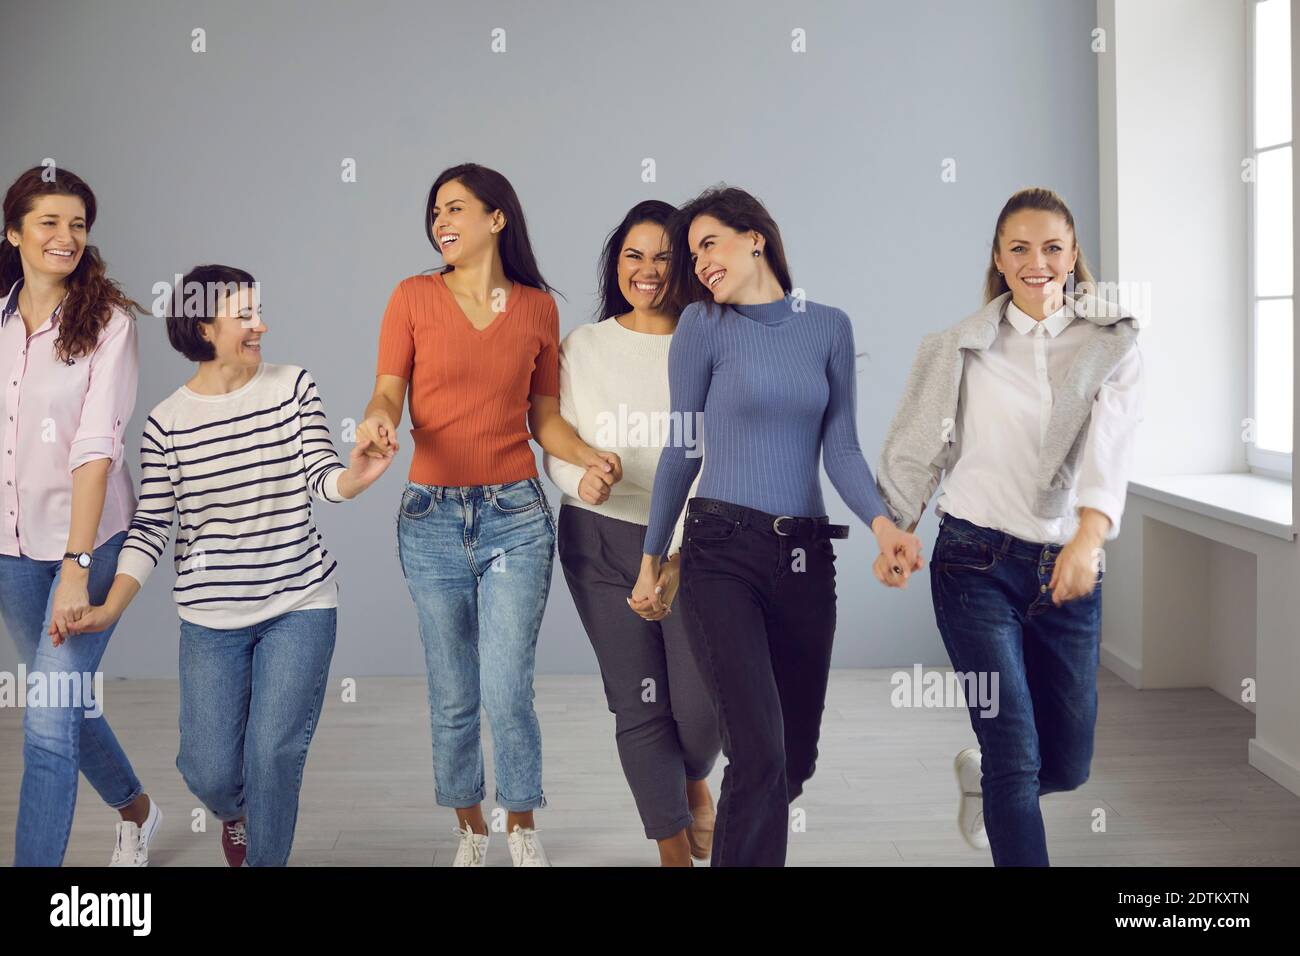 Eine Gruppe glücklicher Frauen, die Hand in Hand gehen und gegenseitige Unterstützung und Solidarität zeigen Stockfoto